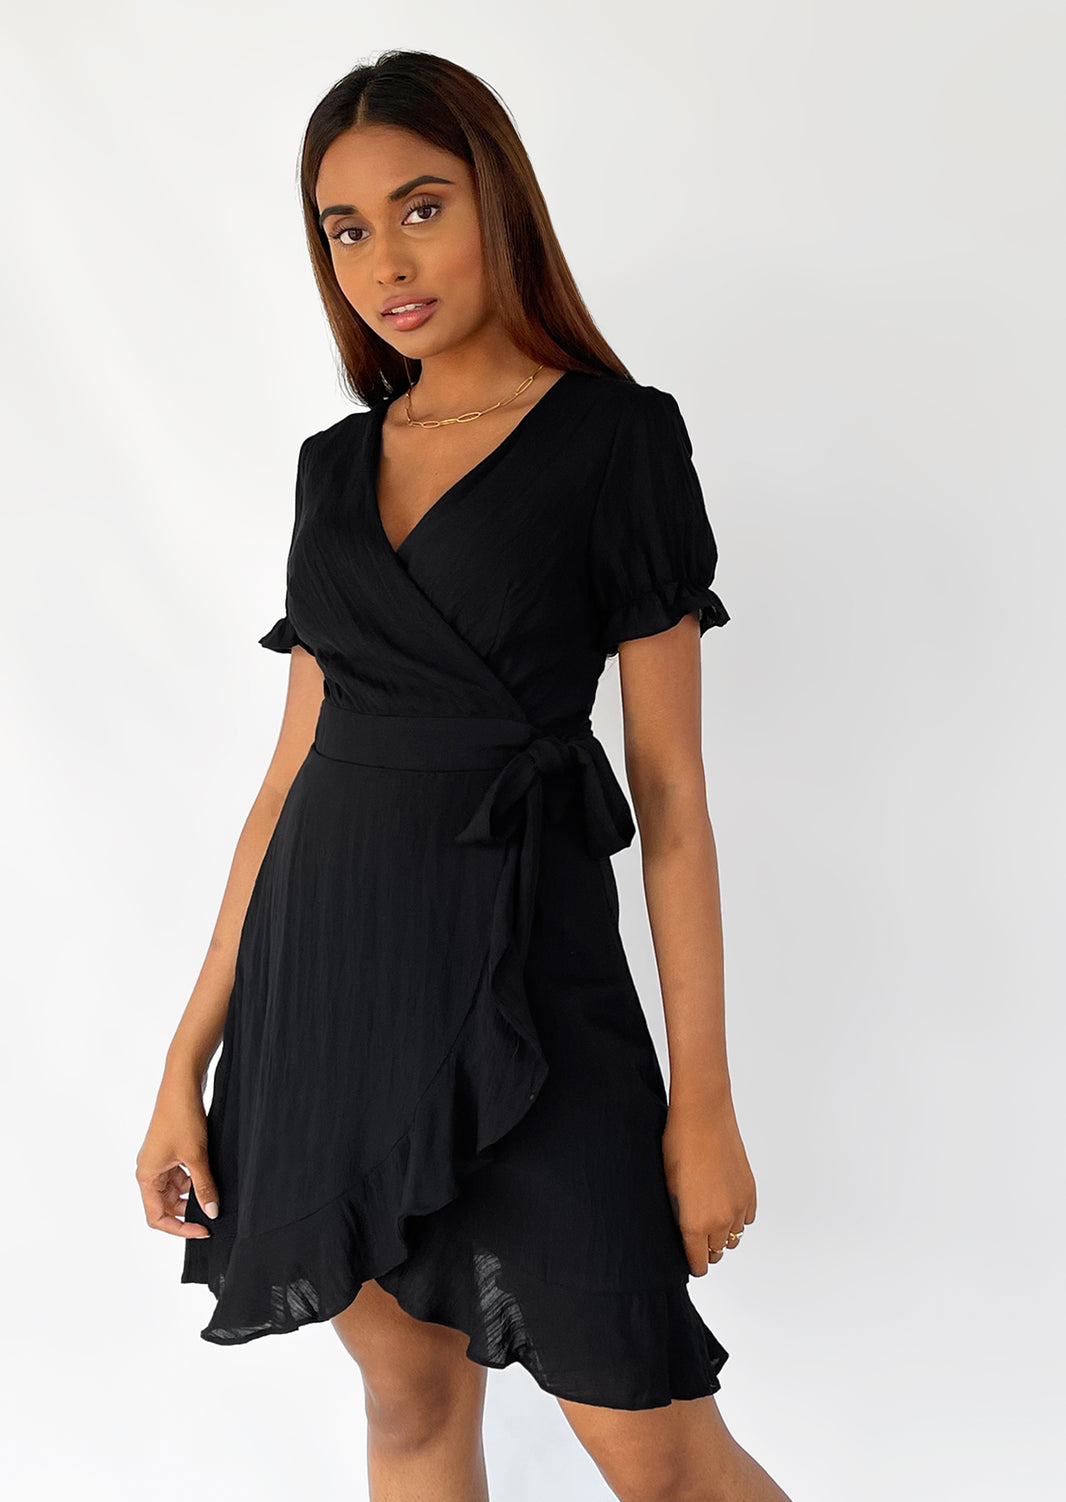 Wrap dress in black